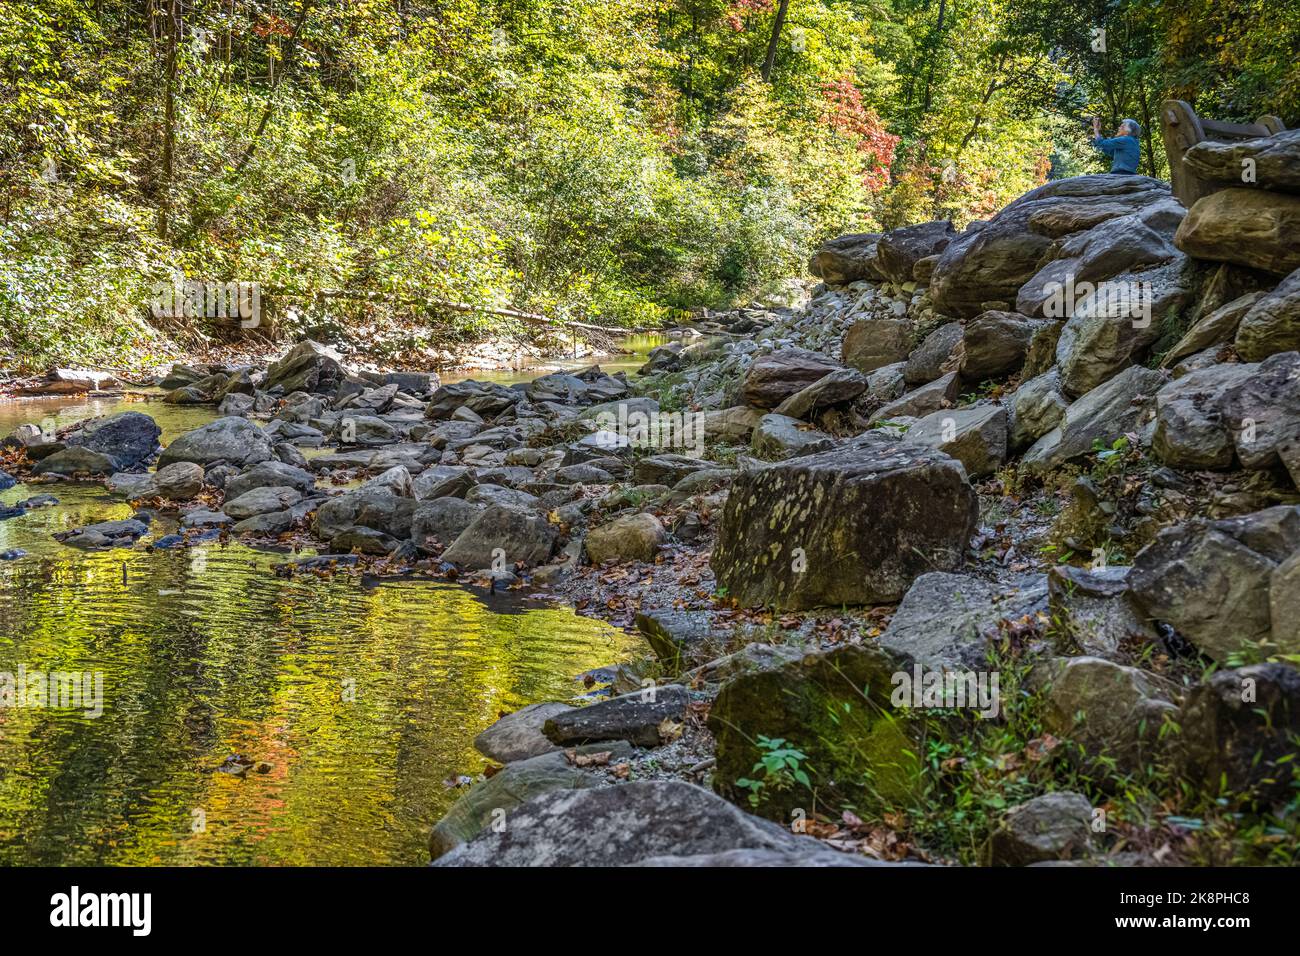 Eine ältere Frau fotografiert das farbenfrohe Herbstlaub entlang des Toccoa Creek bei den Toccoa Falls im Nordosten Georgiens auf ihrem iPhone. (USA) Stockfoto